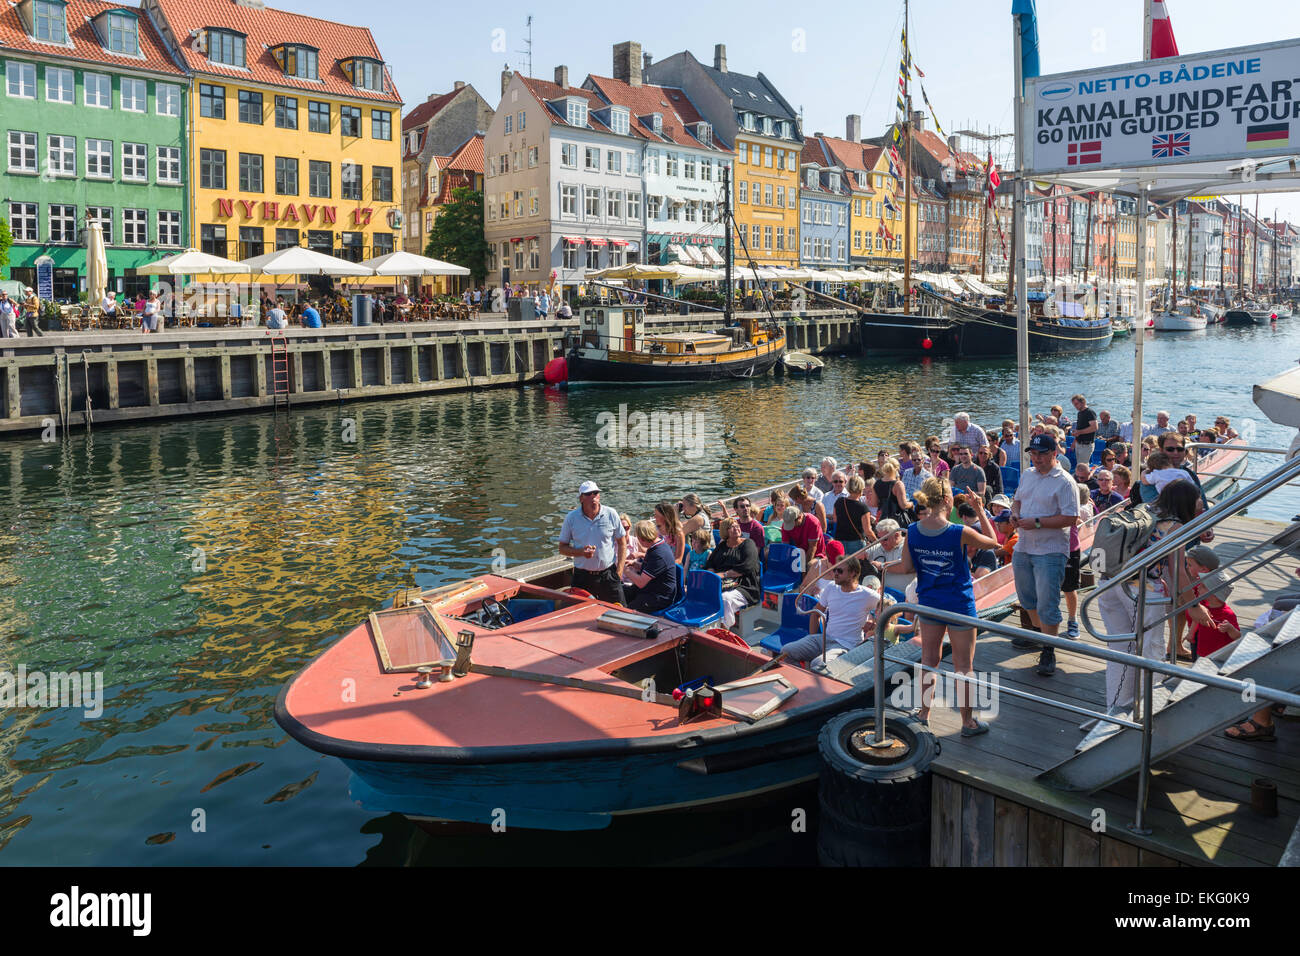 Ein Kanal und Hafen Tour-Kreuzfahrt-Schiff anschickt, seine Basis in Nyhavn Kopenhagen zu verlassen. Stockfoto